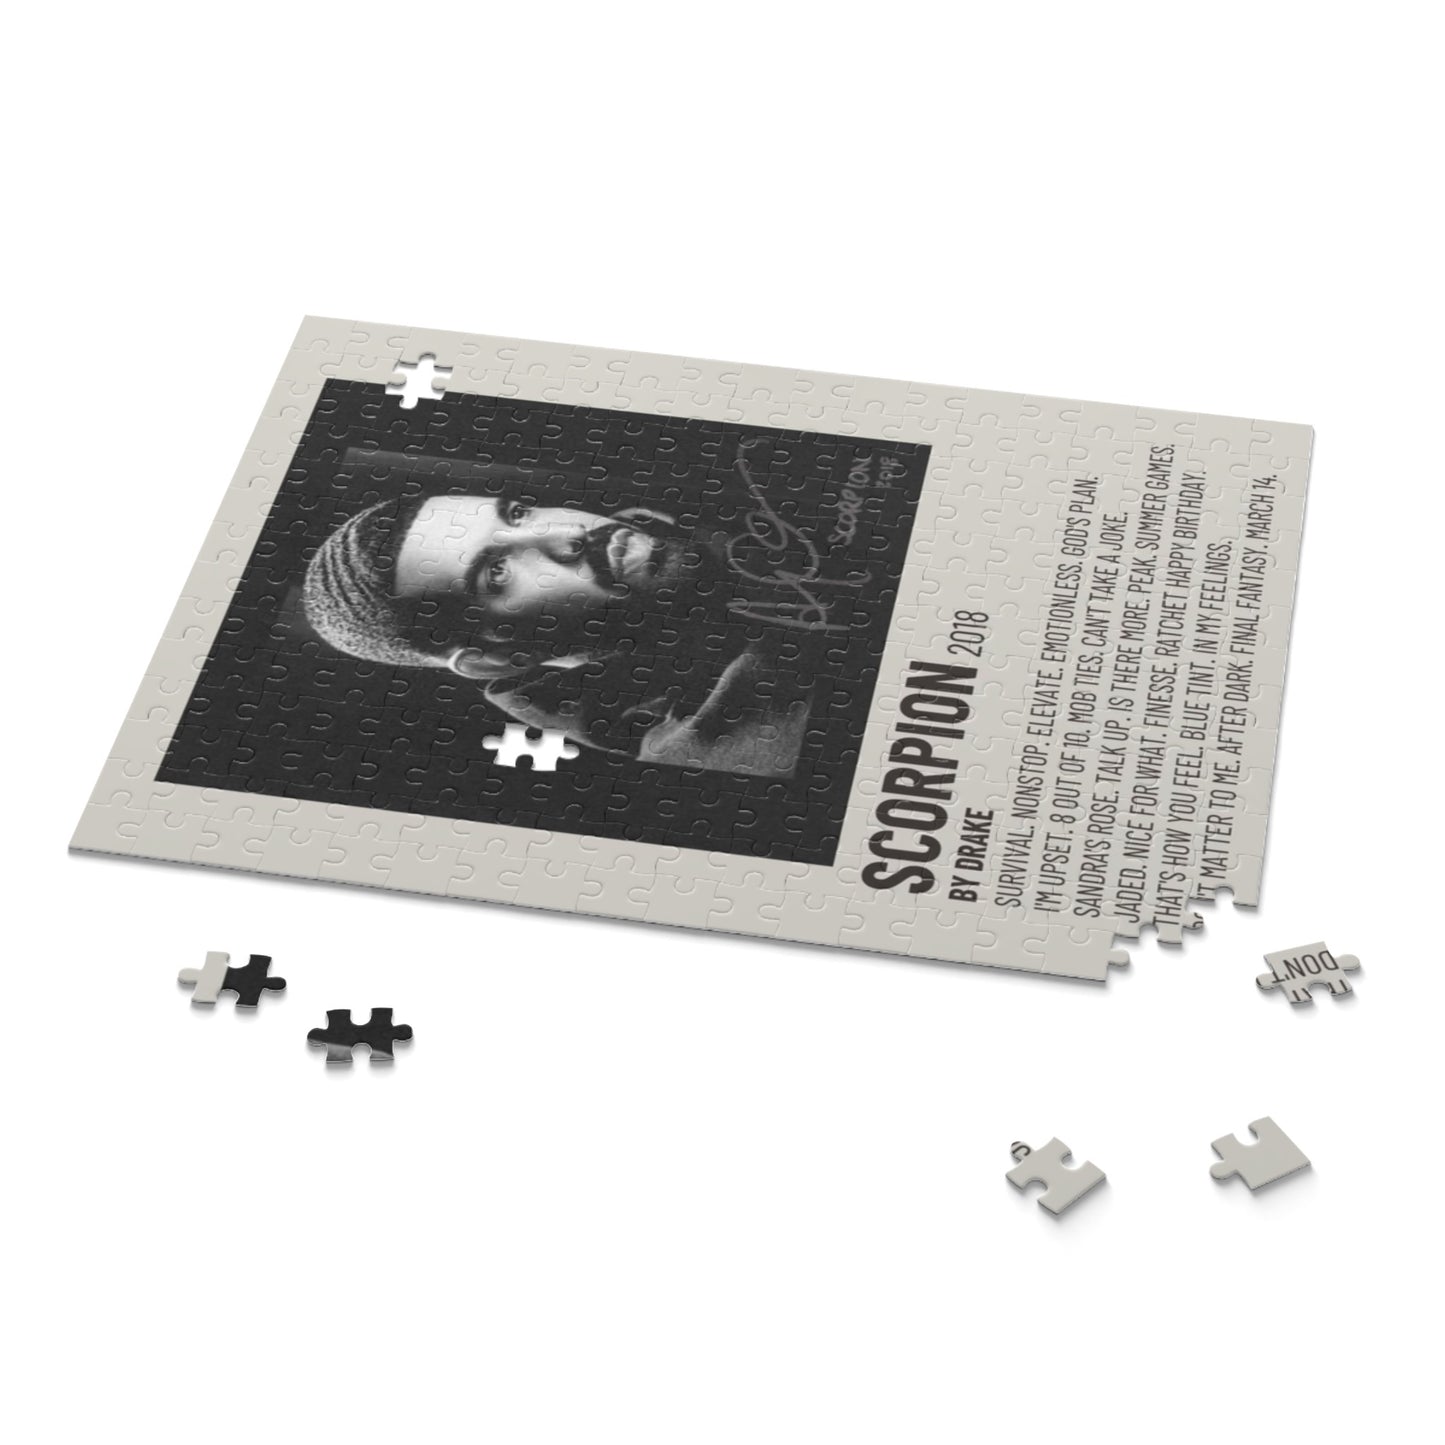 "Scorpion' Album Puzzle (Drake)